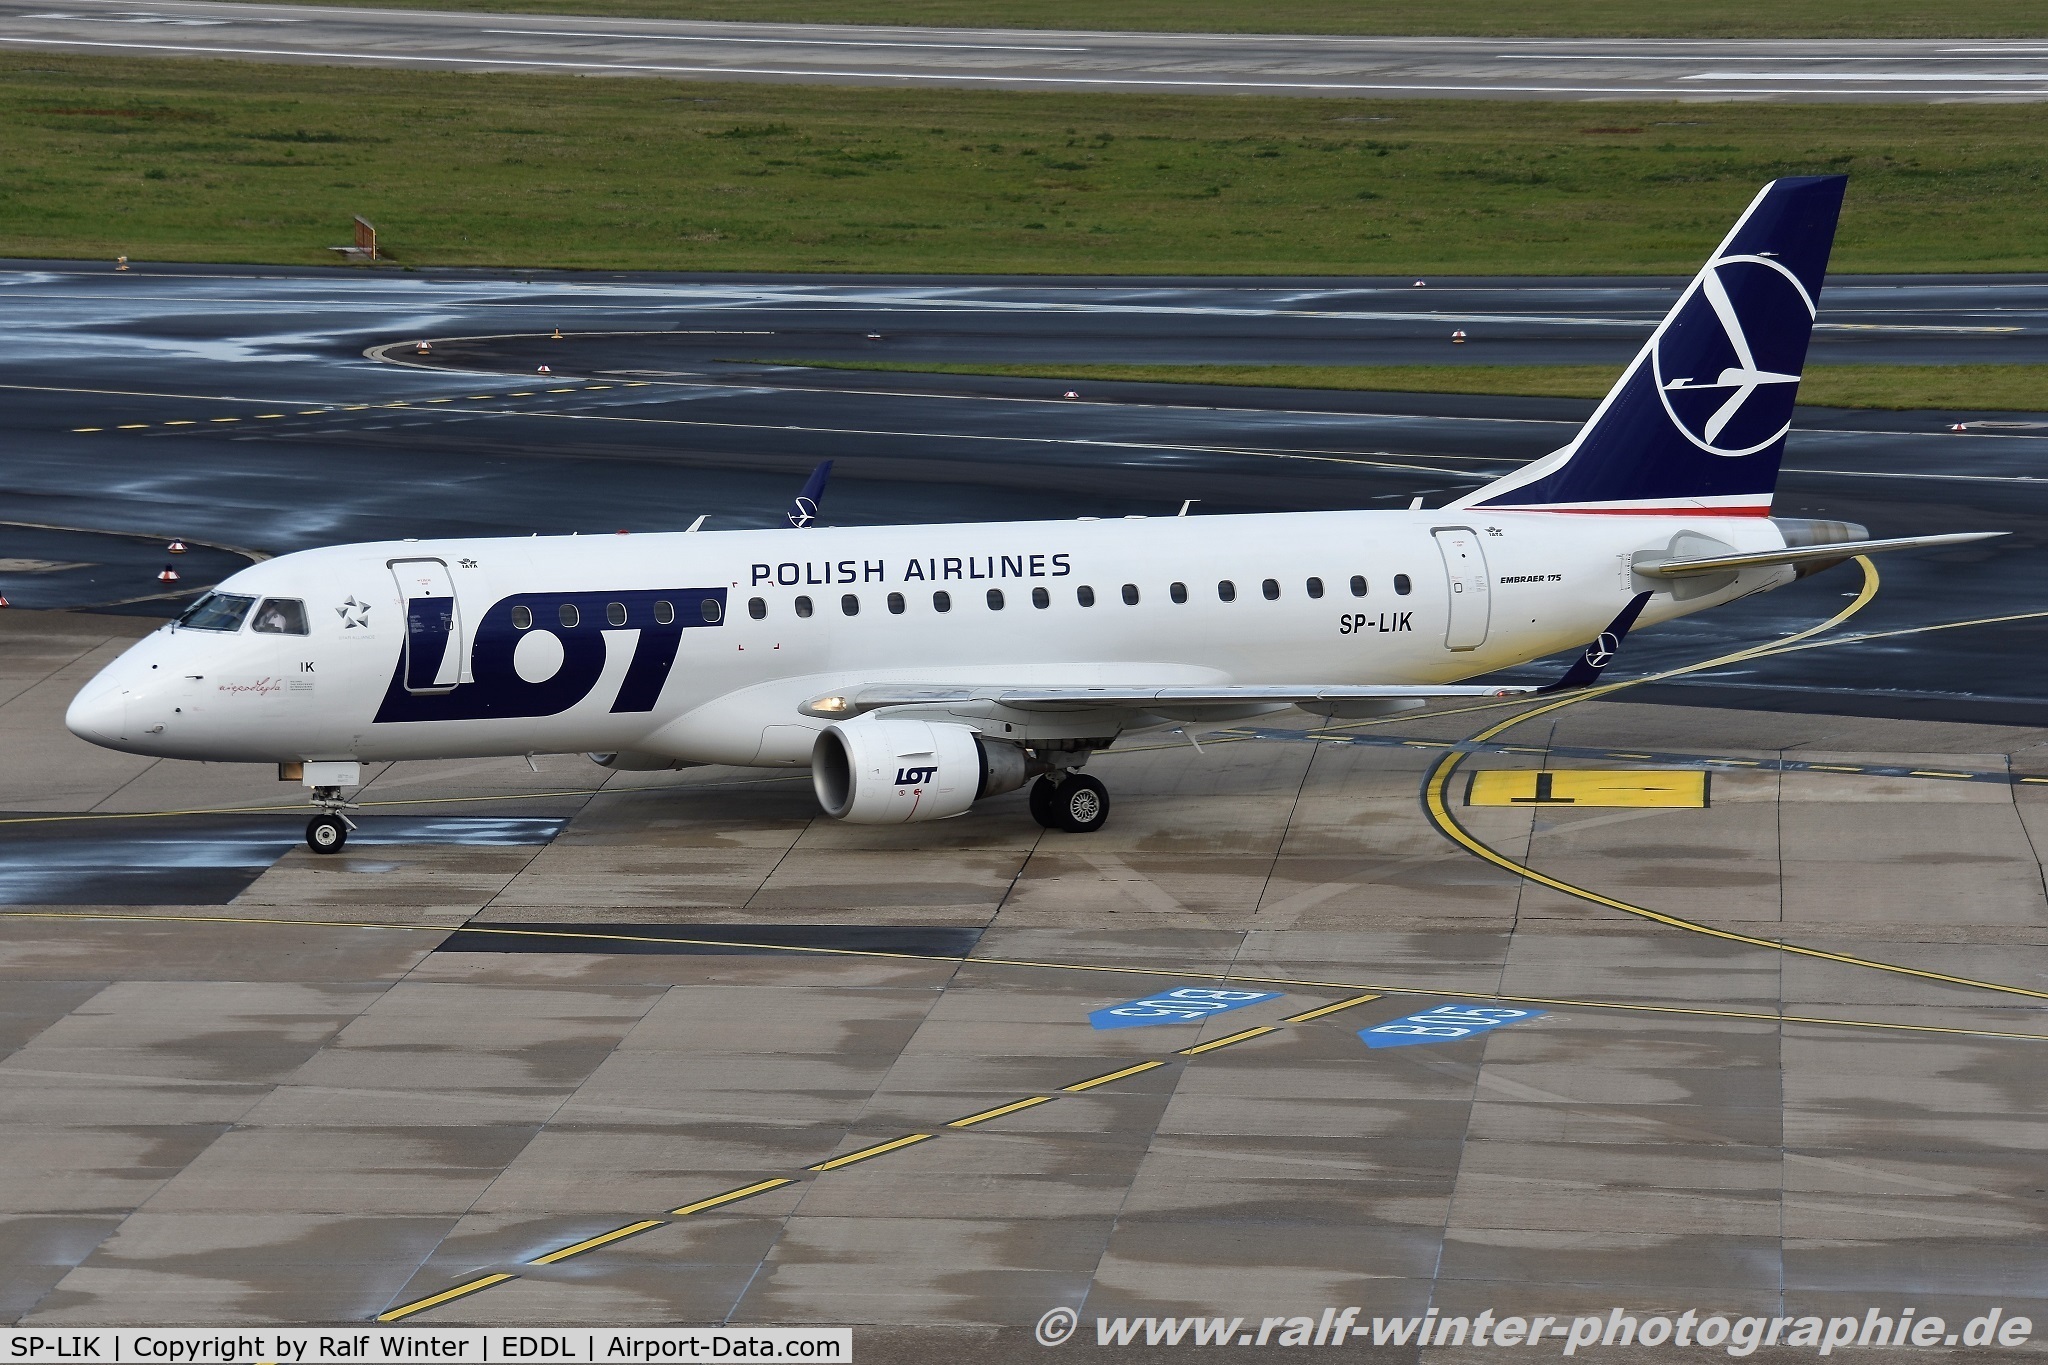 SP-LIK, 2009 Embraer 175LR (ERJ-170-200LR) C/N 17000303, Embraer ERJ-175LR 170-200LR - LO LOT LOT Polish Airlines - 170000303 - SP-LIK - 27.09.2019 - DUS